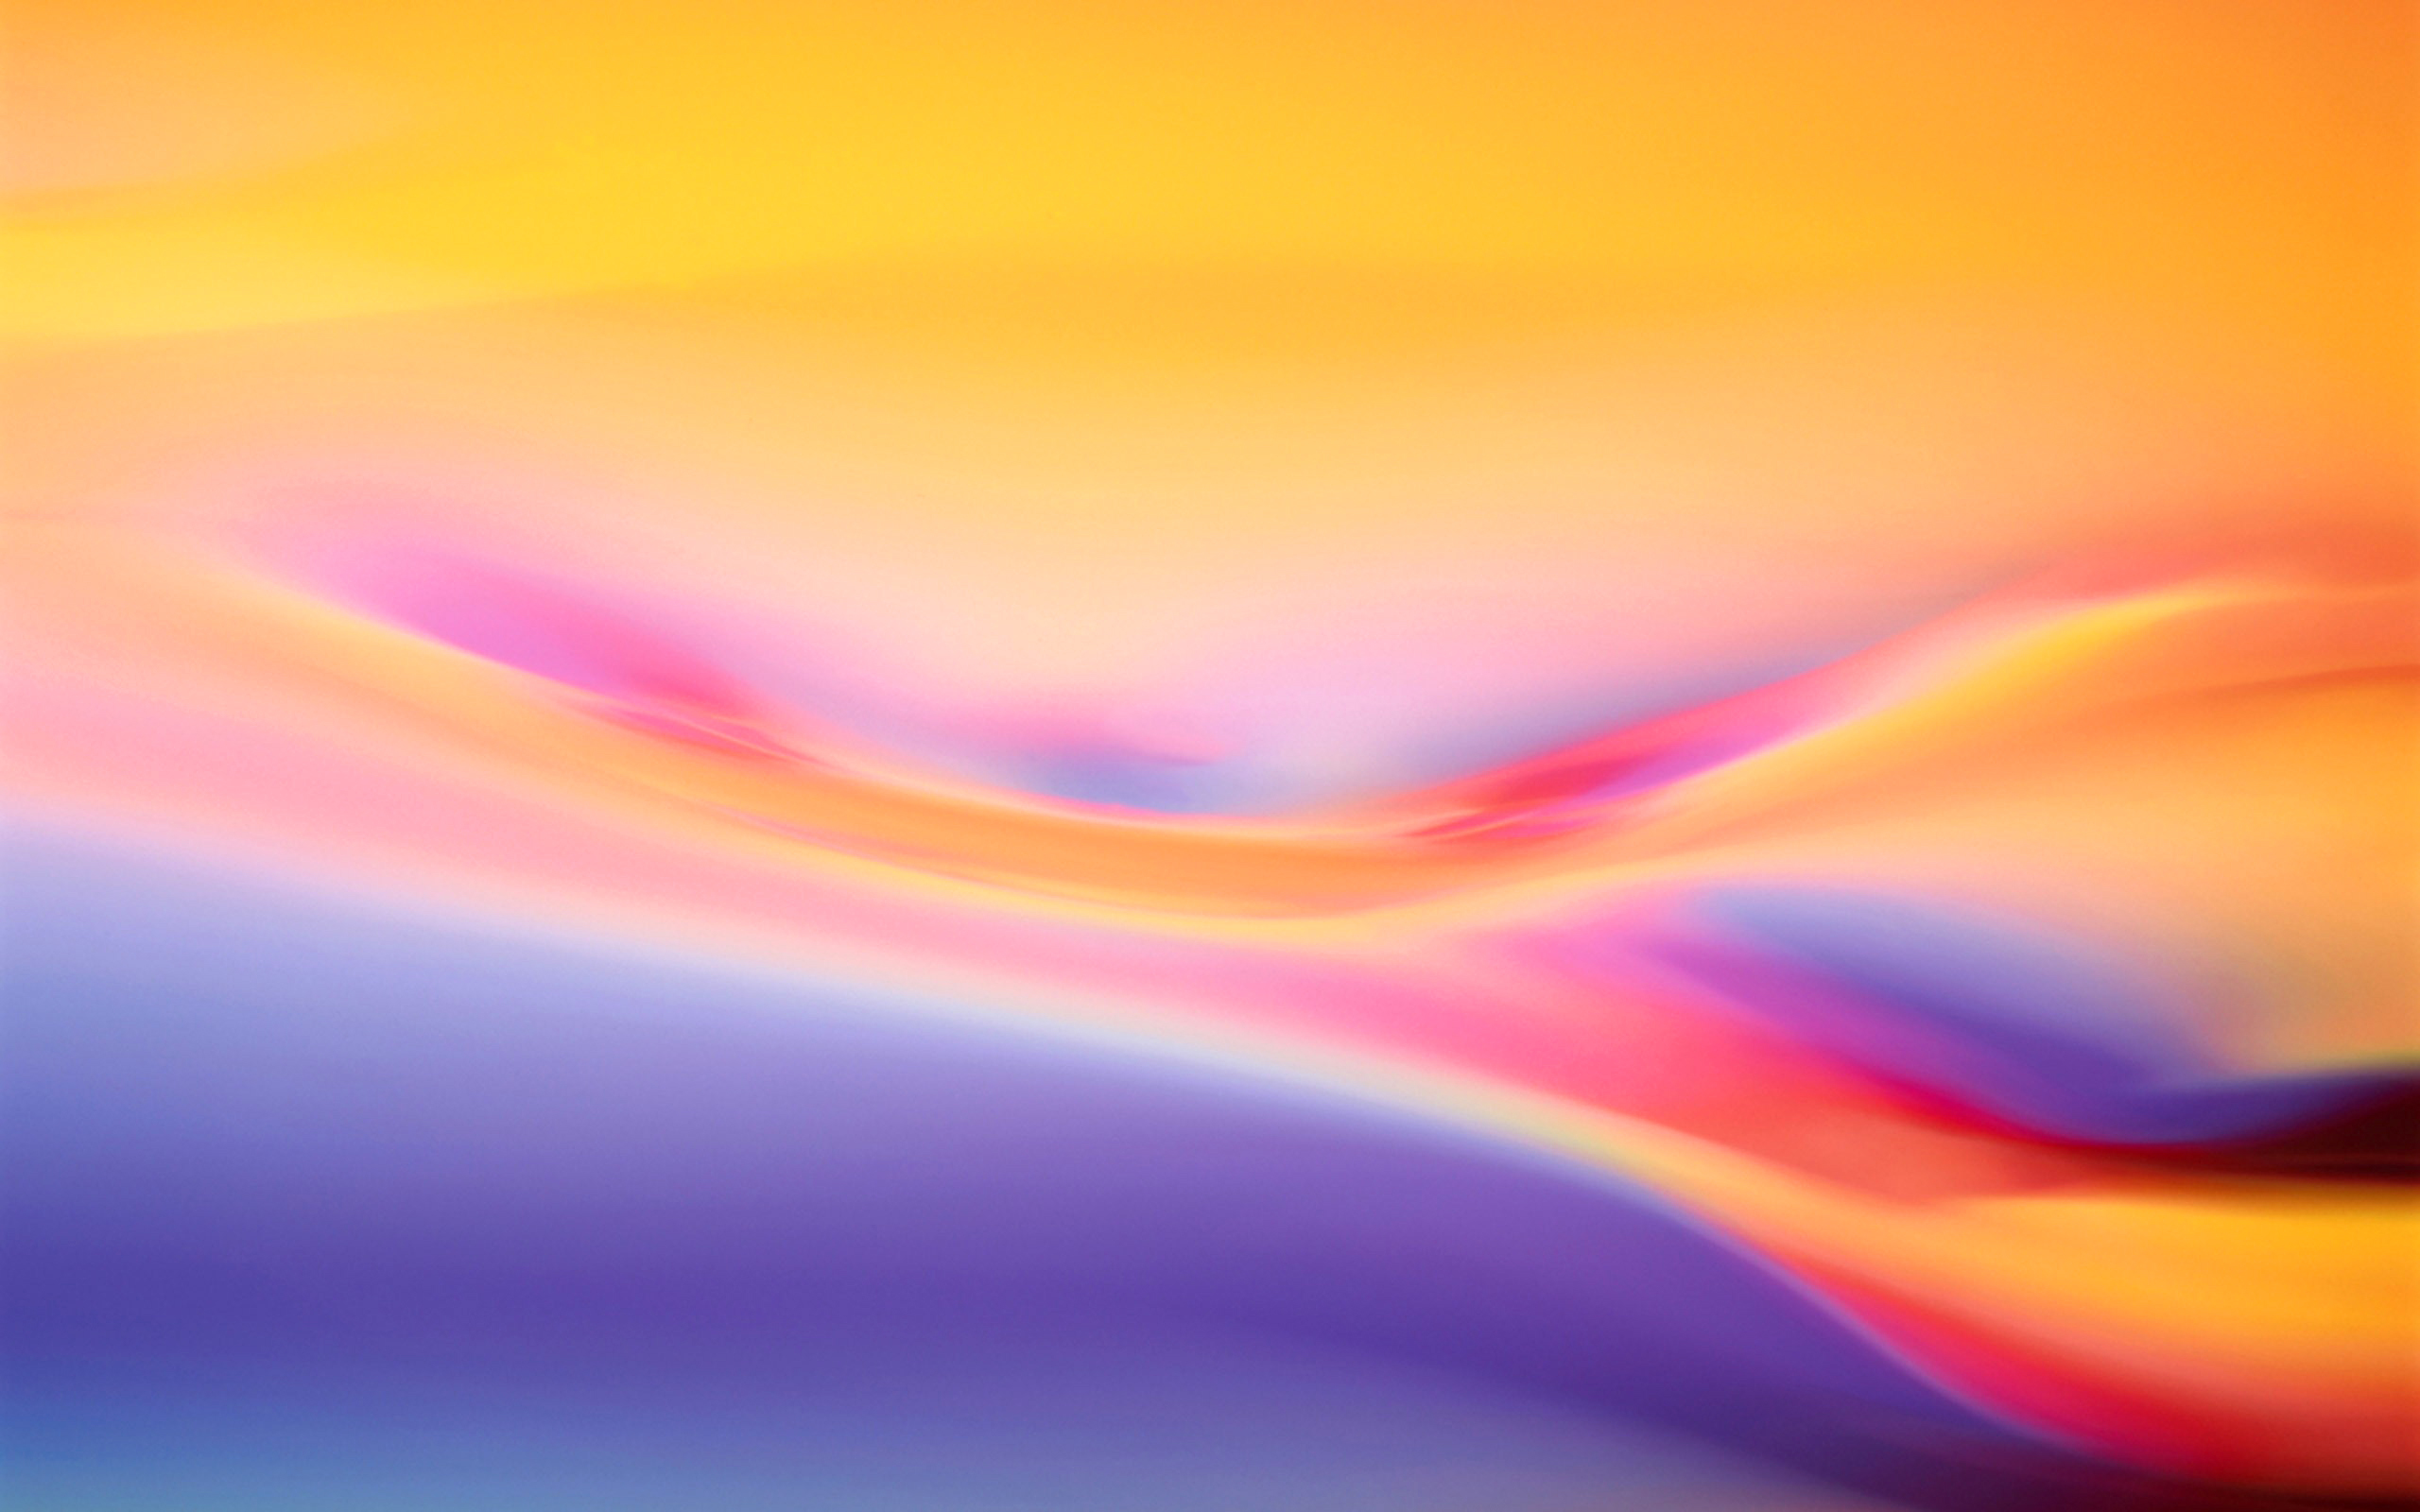 Mac OS X Fluid Colors6013417038 - Mac OS X Fluid Colors - Marshmallow, Fluid, Colors